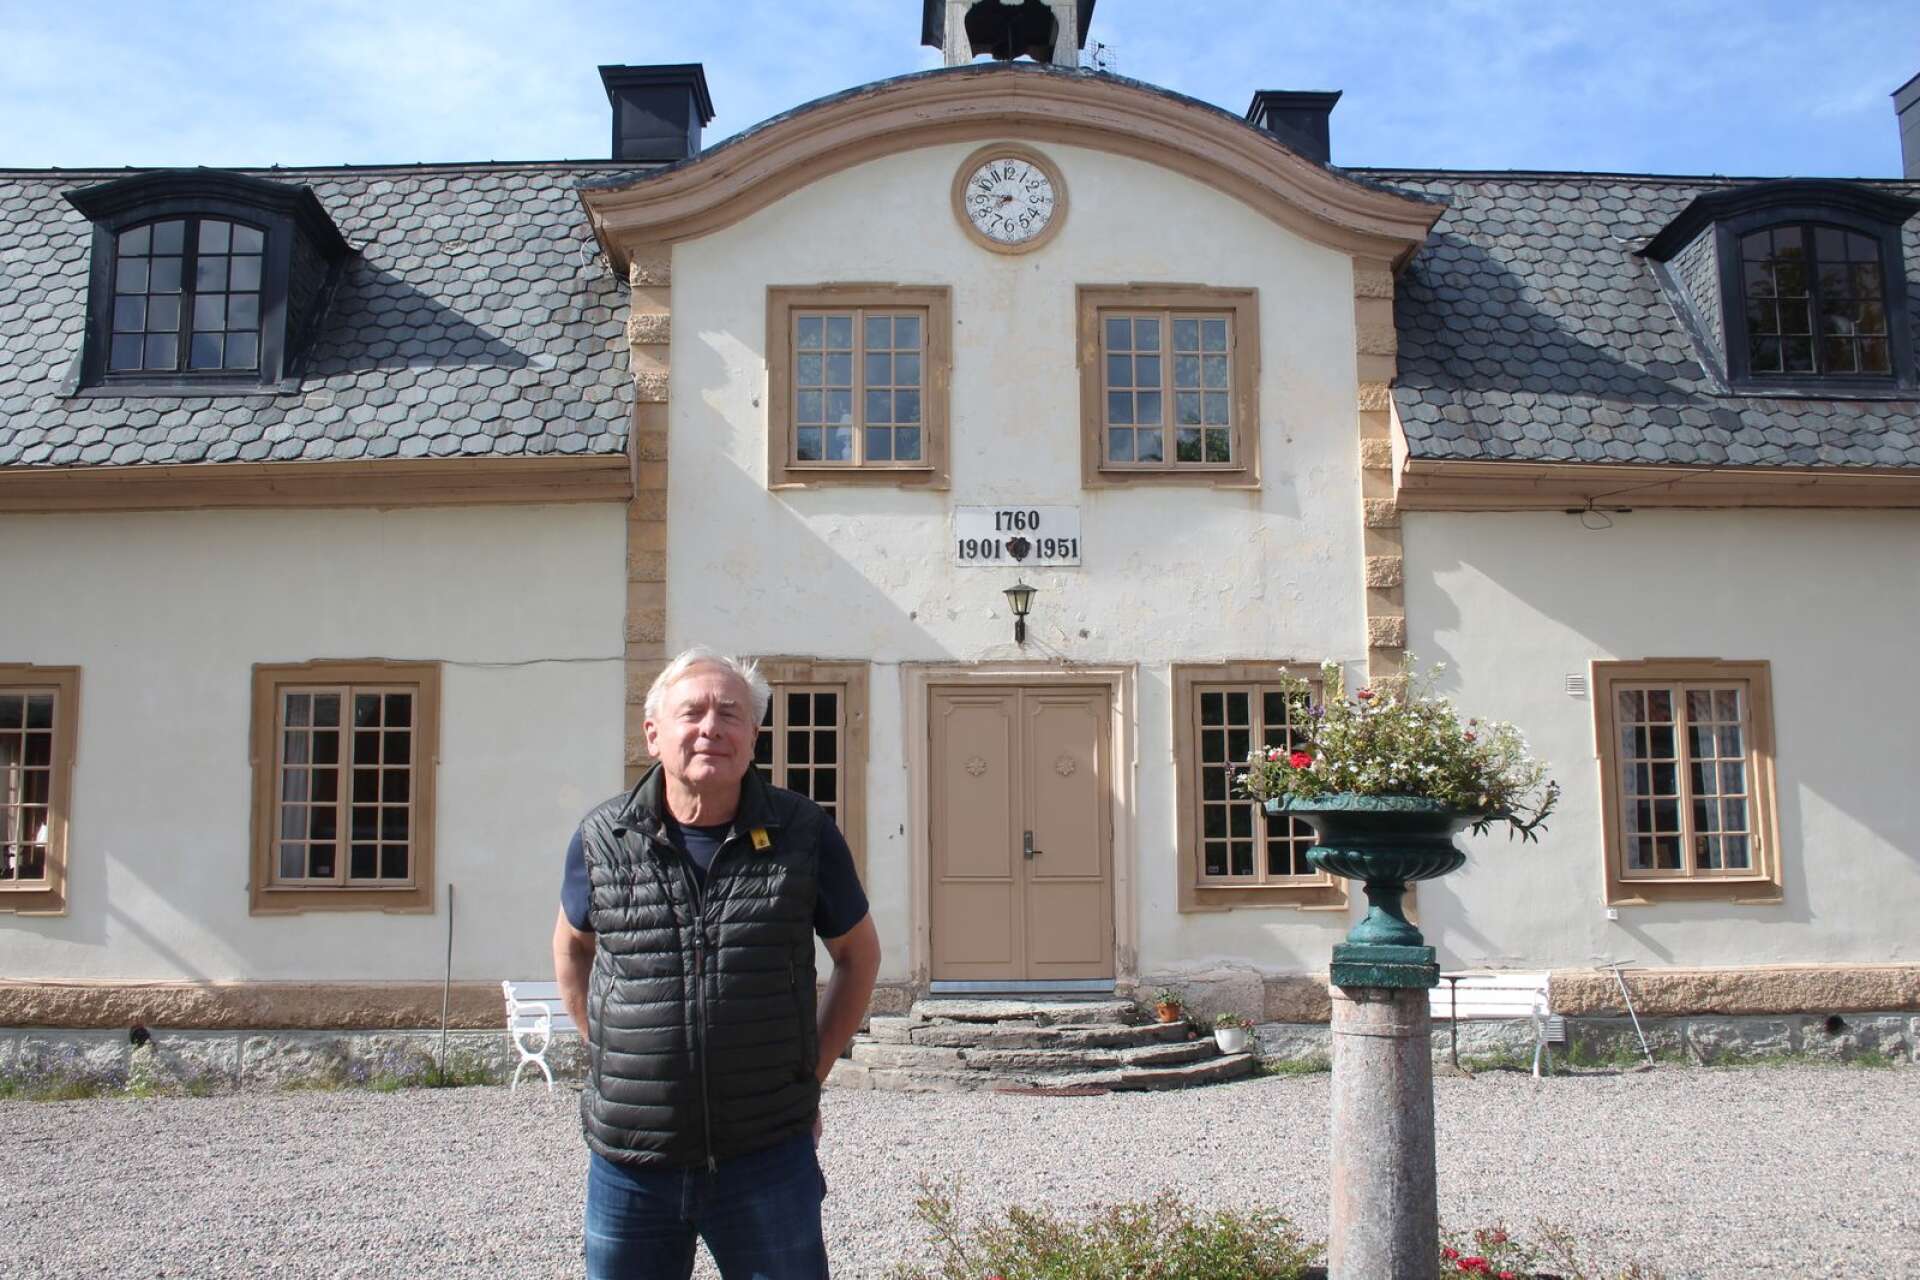 Stadra herrgård är Magnus Wetterholms fasta punkt i sommar. Skådespelaren och teaterchefen som hittade till teatern via gymnasiet i Karlstad, har skapat ett kulturcentrum kring en anrik gård söder om Grythyttan.